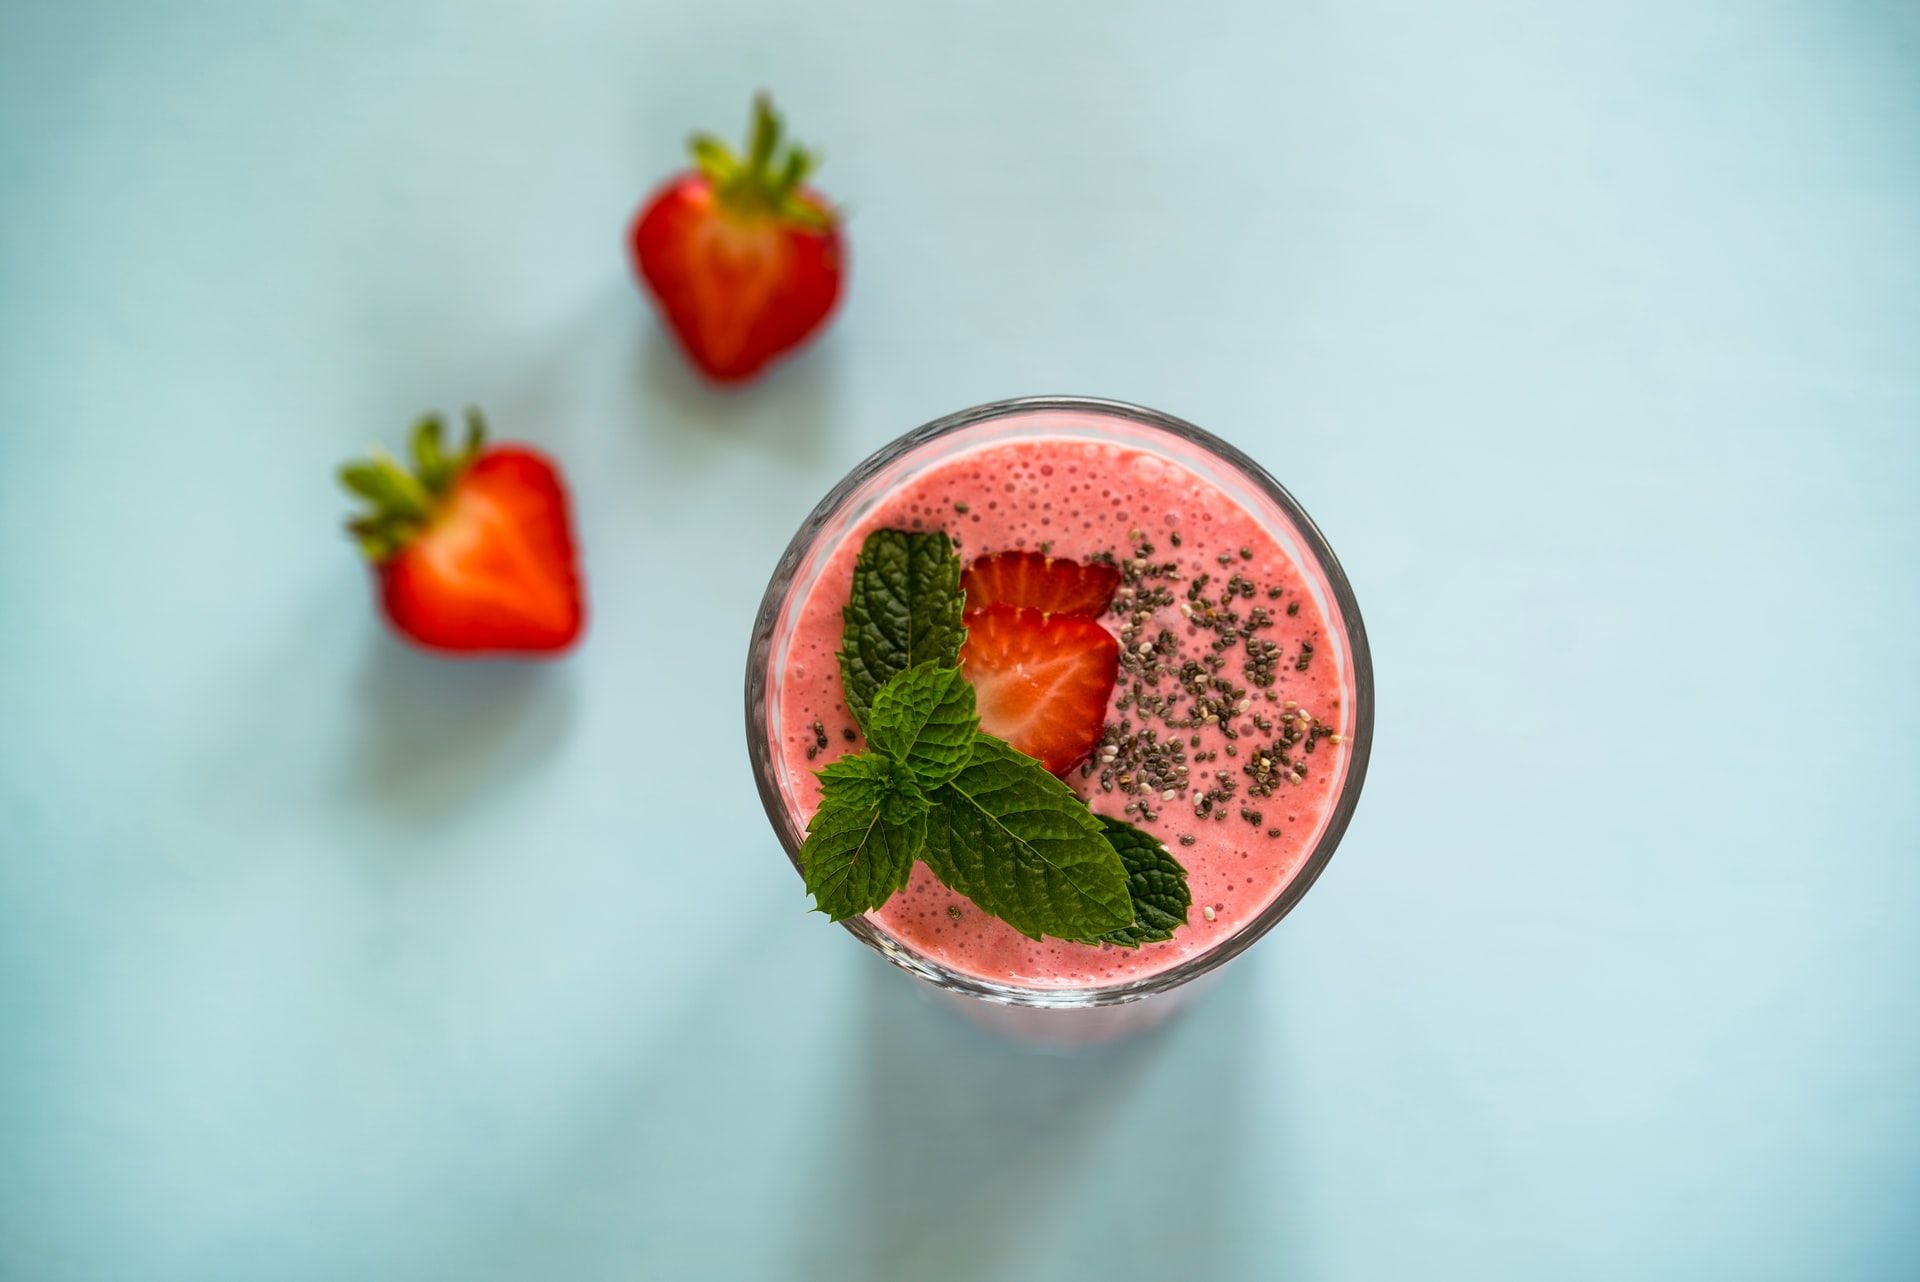 Berikut manfaat dan aneka resep buah strawberry yang segar dan kaya akan khasiatnya, penuh dengan vitamin